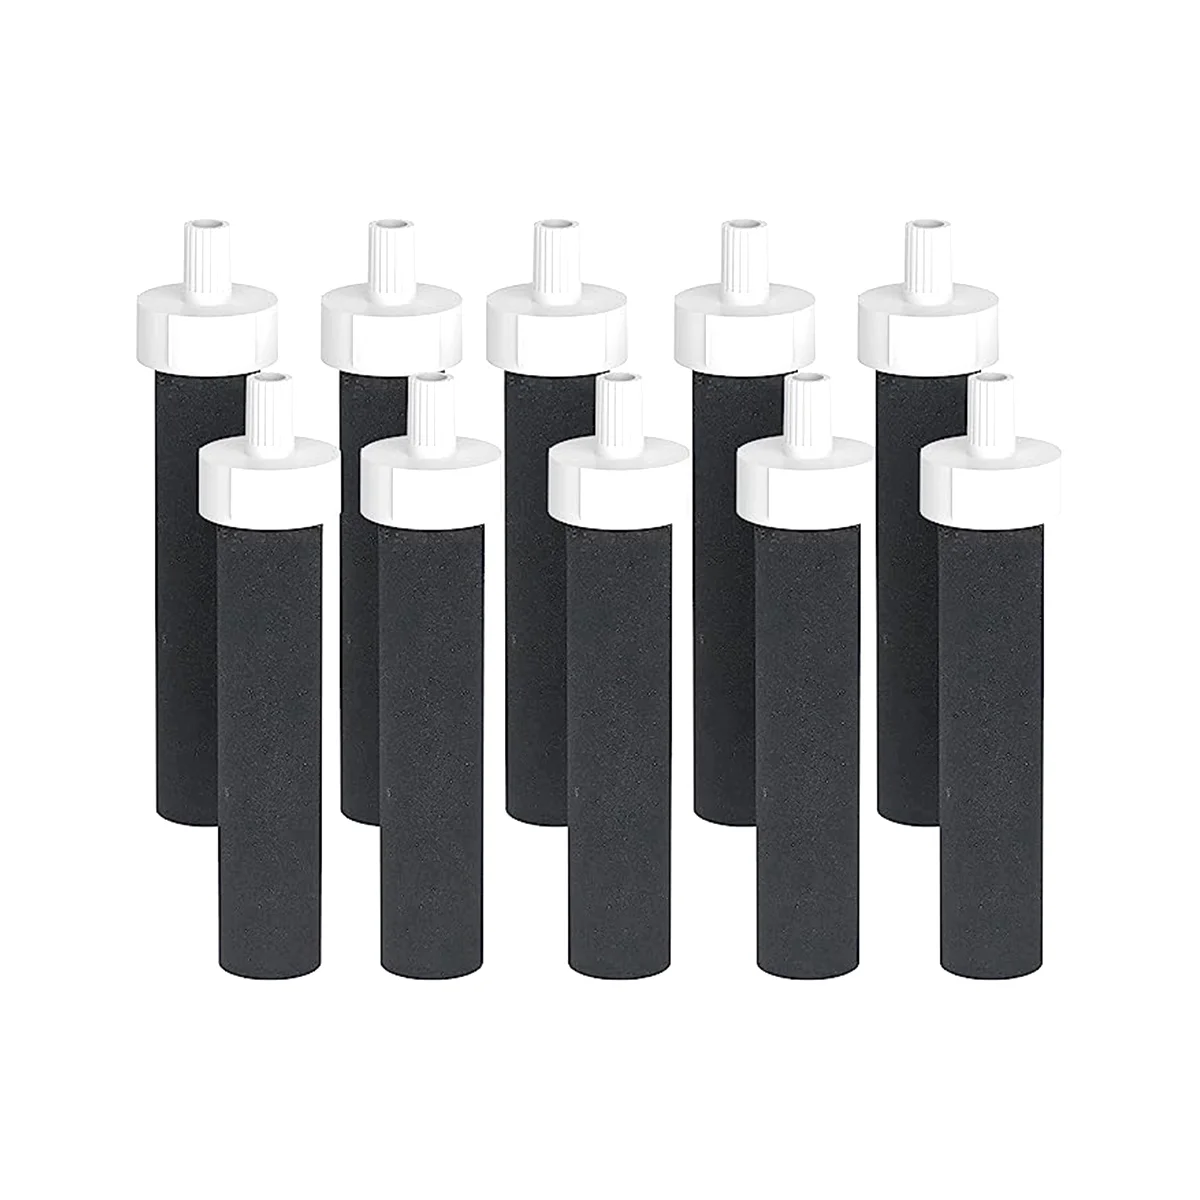 

Сменные фильтры для бутылок с активированным углем для BB06, Hard Edge, спортивные фильтры для бутылок, 10 шт.